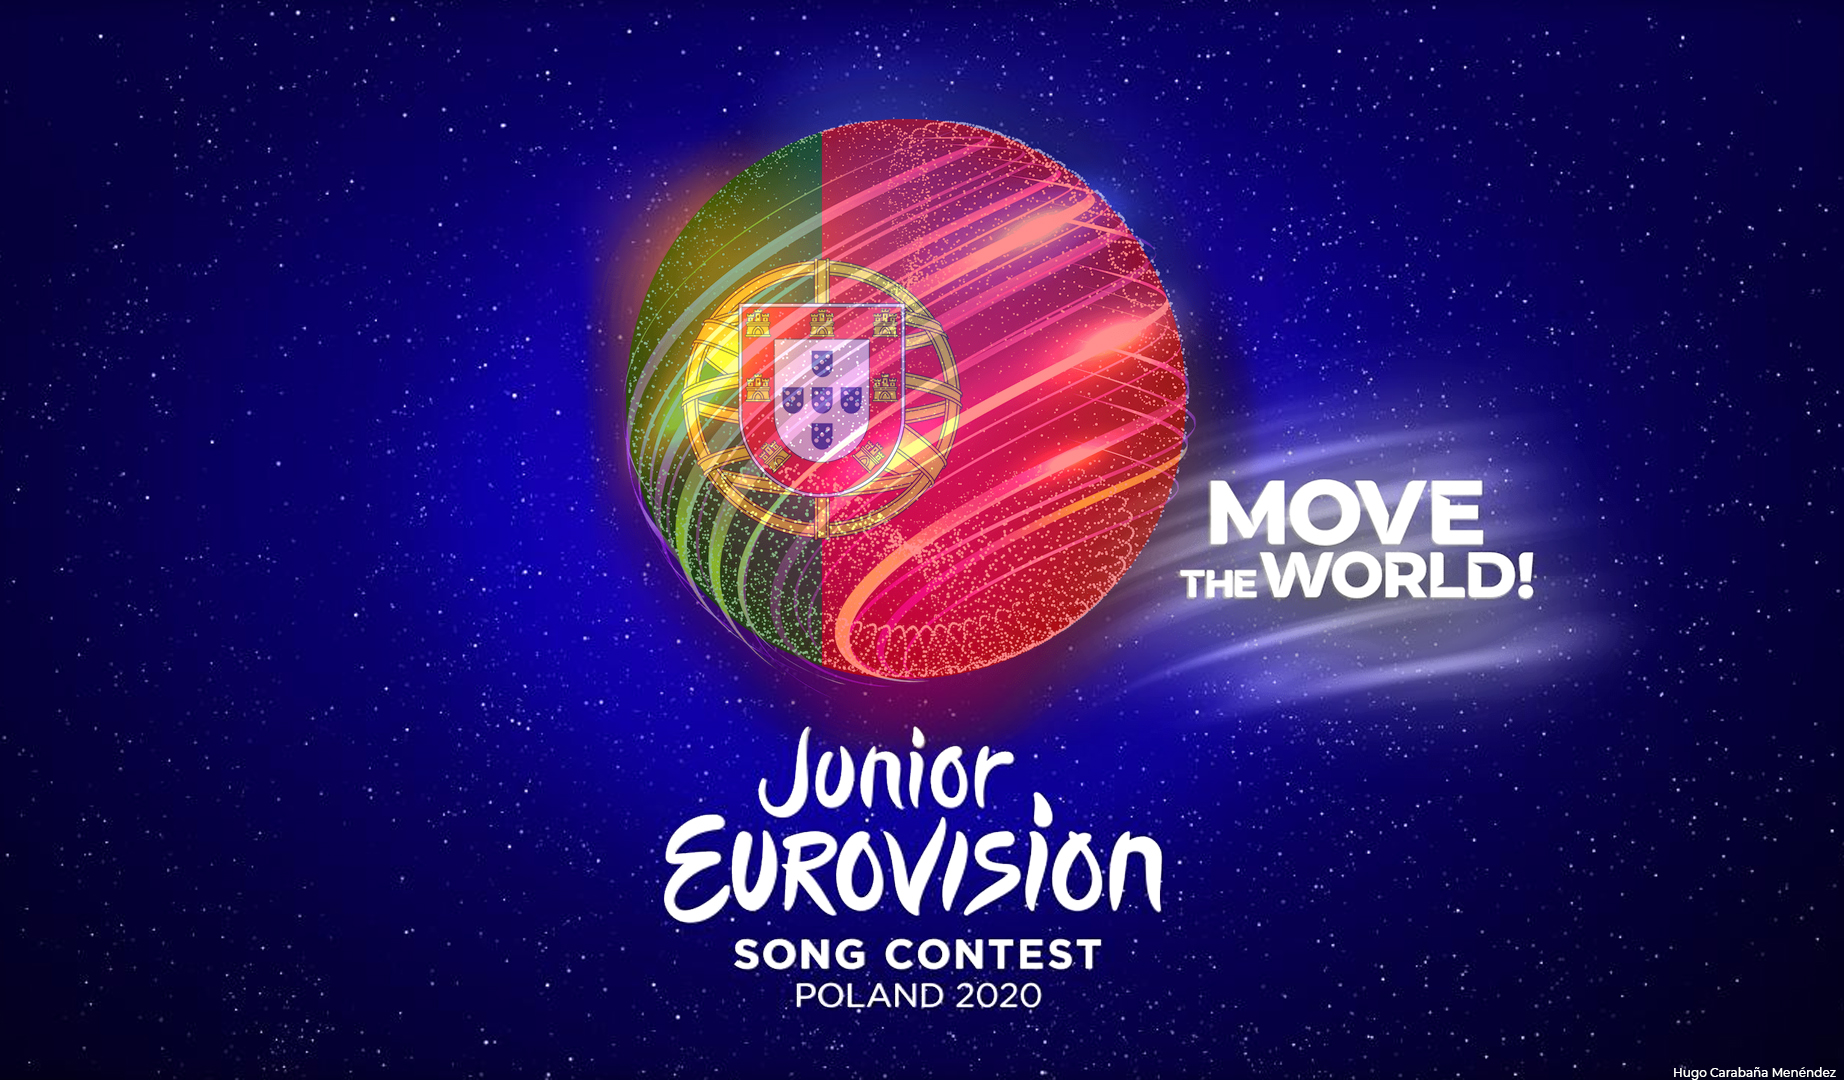 La RTP portuguesa confirma su intención de participar en Eurovisión Junior 2020